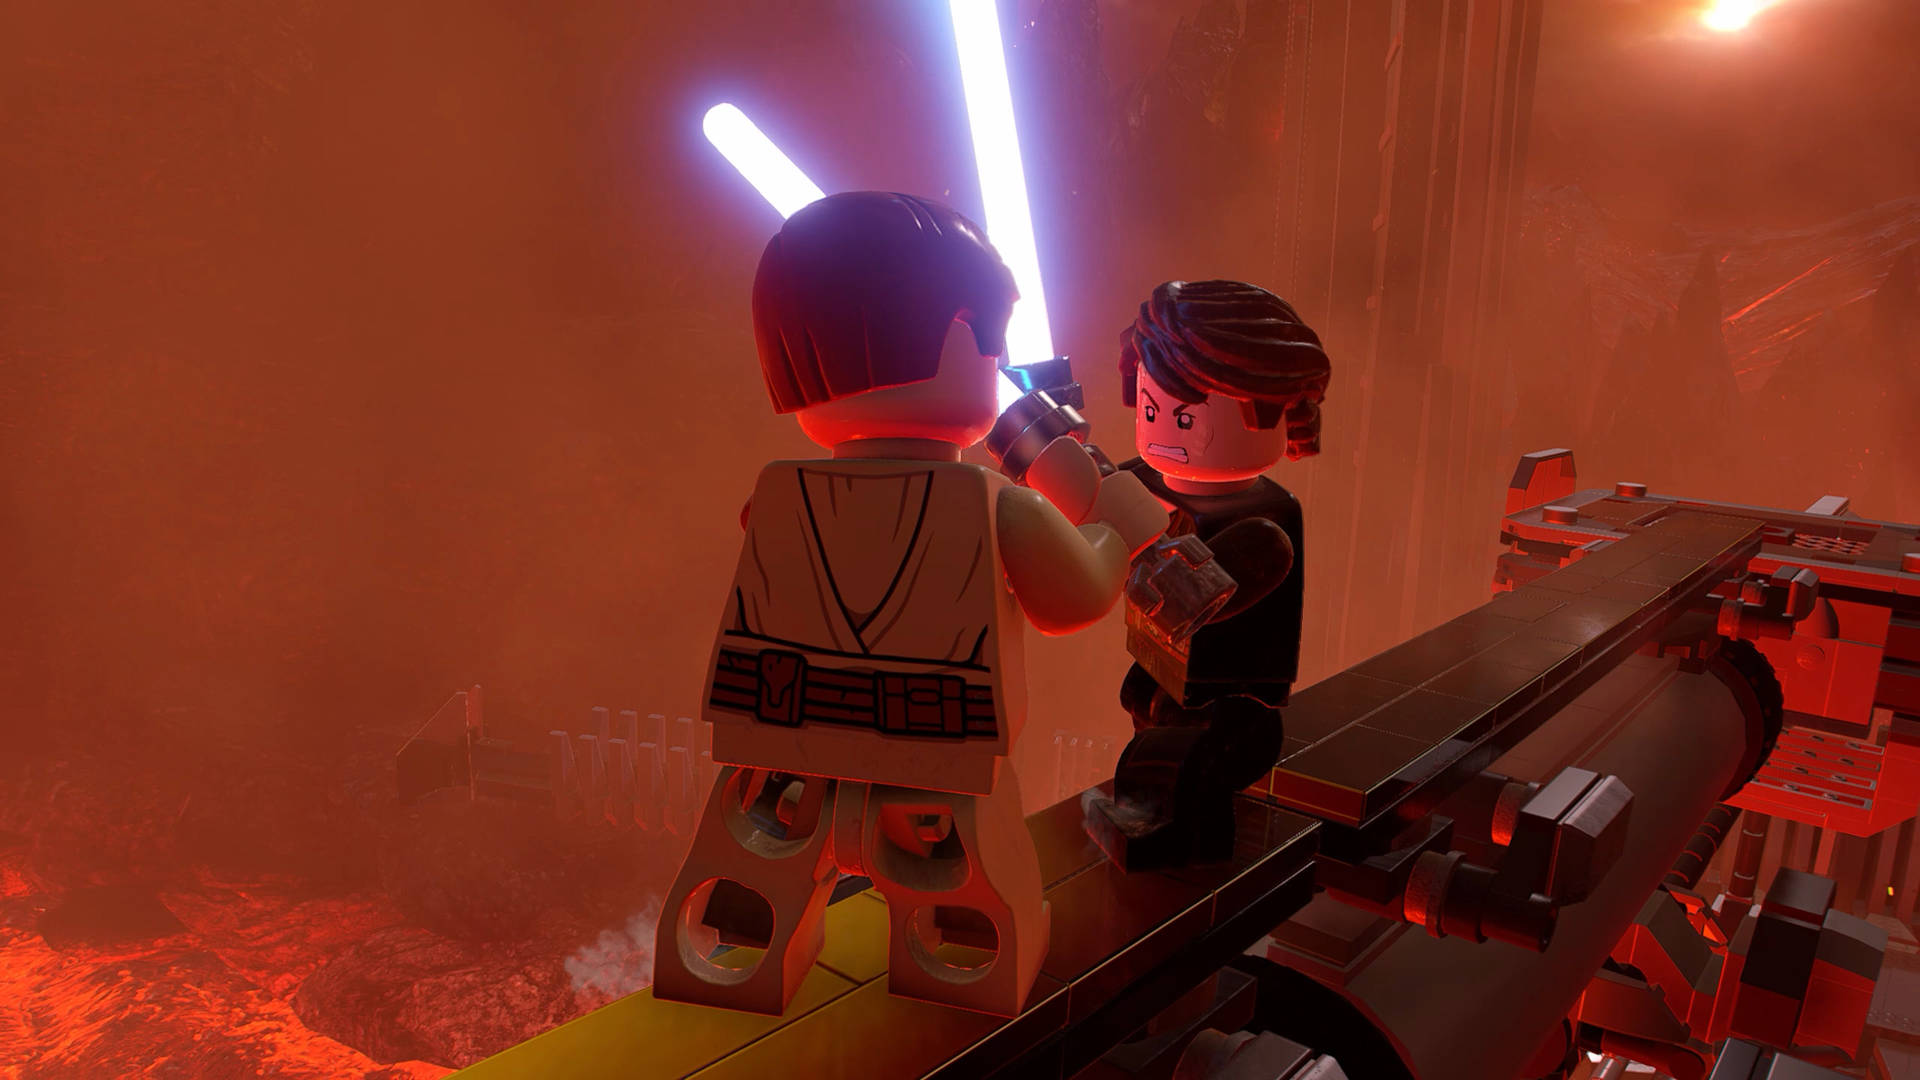 The Duel On Mustafar In Lego Star Wars Wallpaper